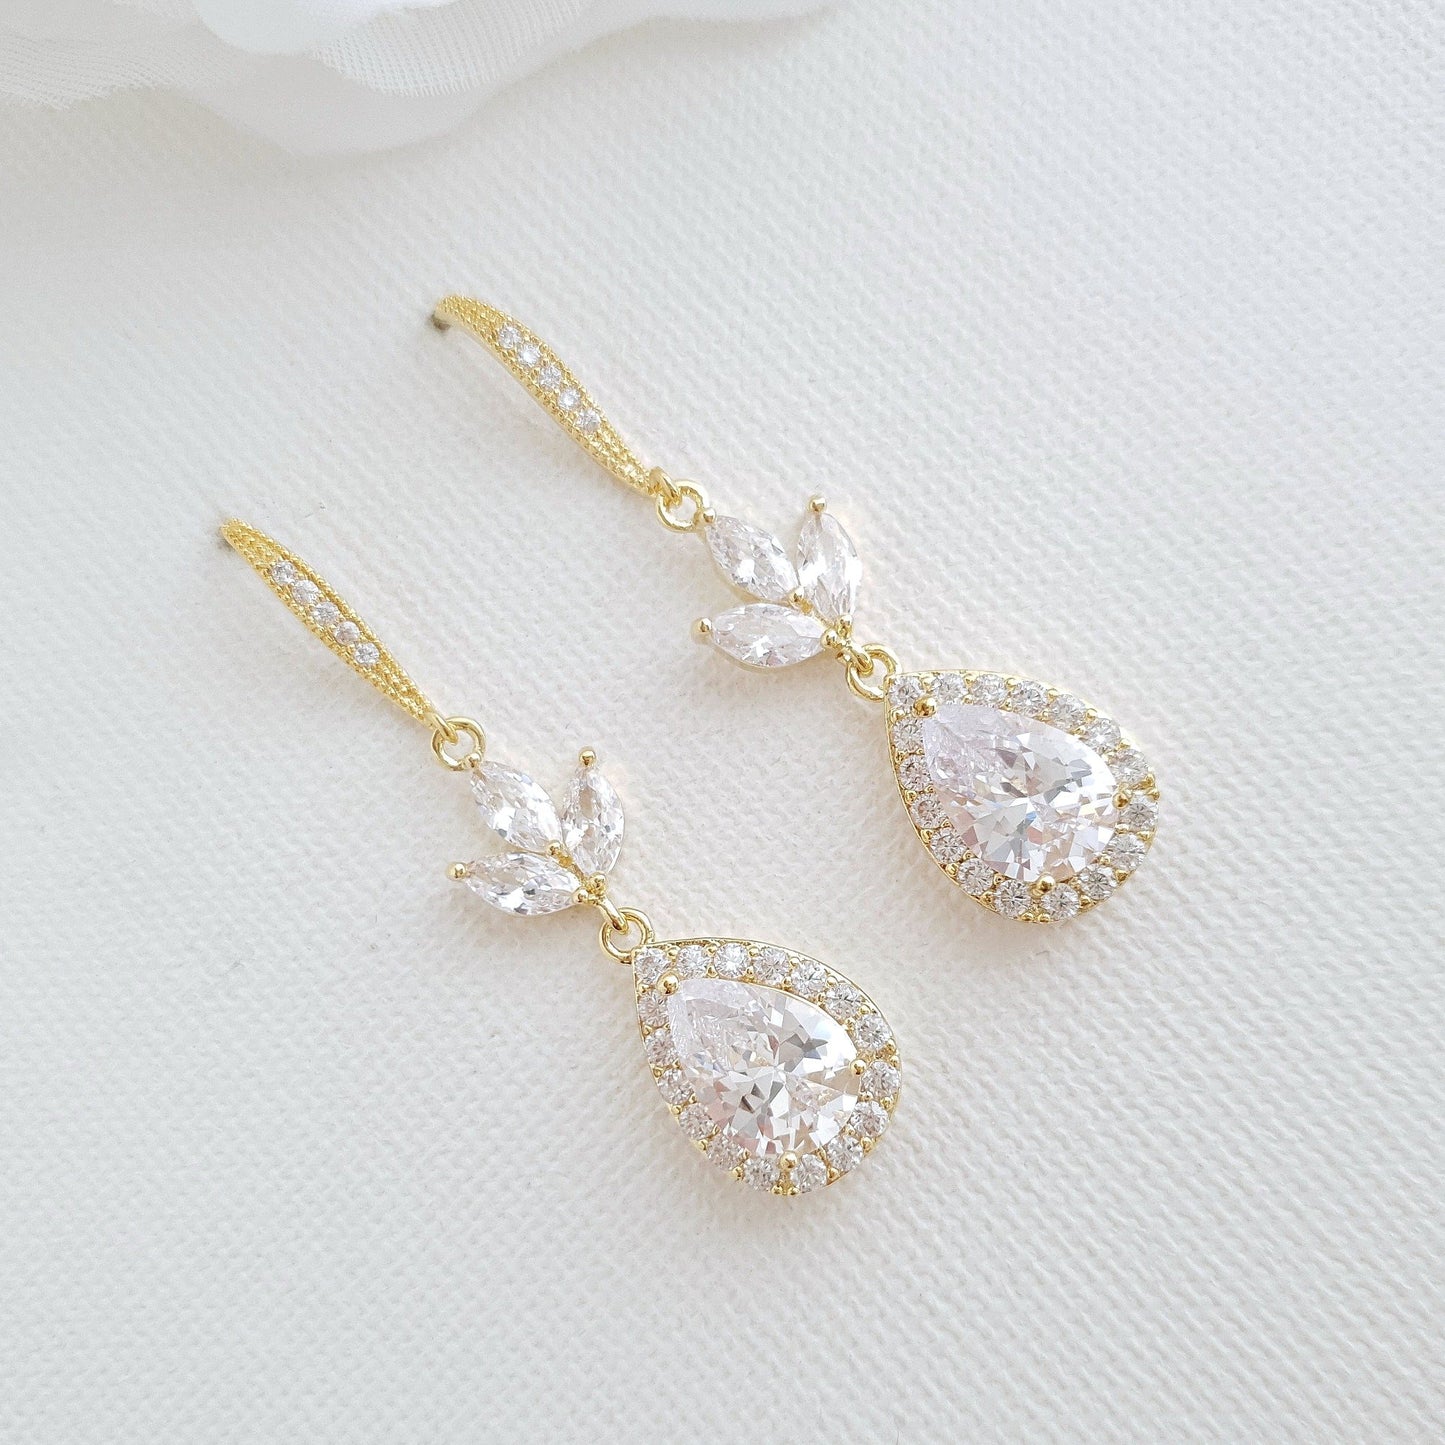 Gold Hook Earrings For Weddings- Lotus - PoetryDesigns